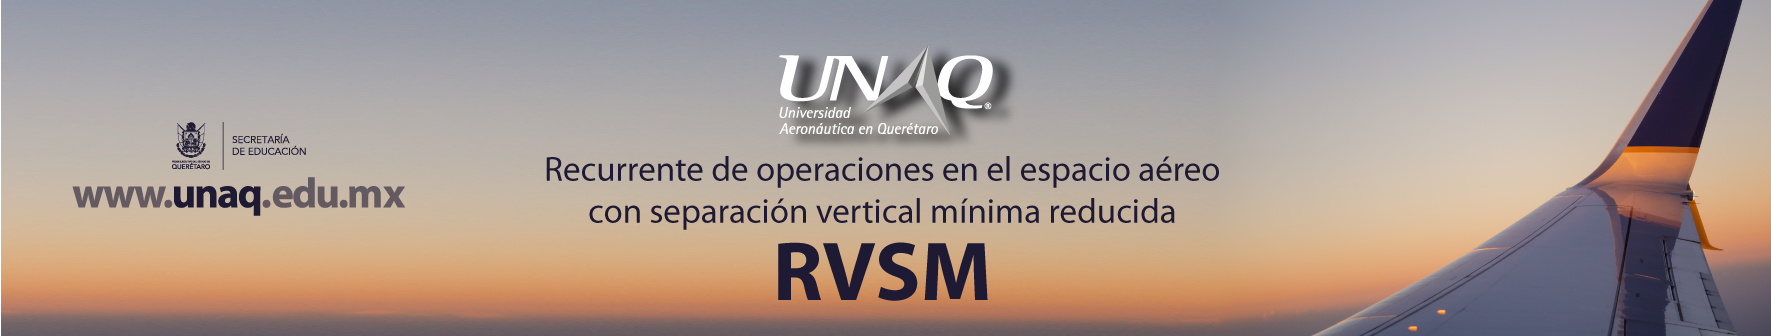  72 Curso Recurrente Procedimientos de Operación RVSM de la Aeronave Familia ARBUS A320 – Motores y Planeadores